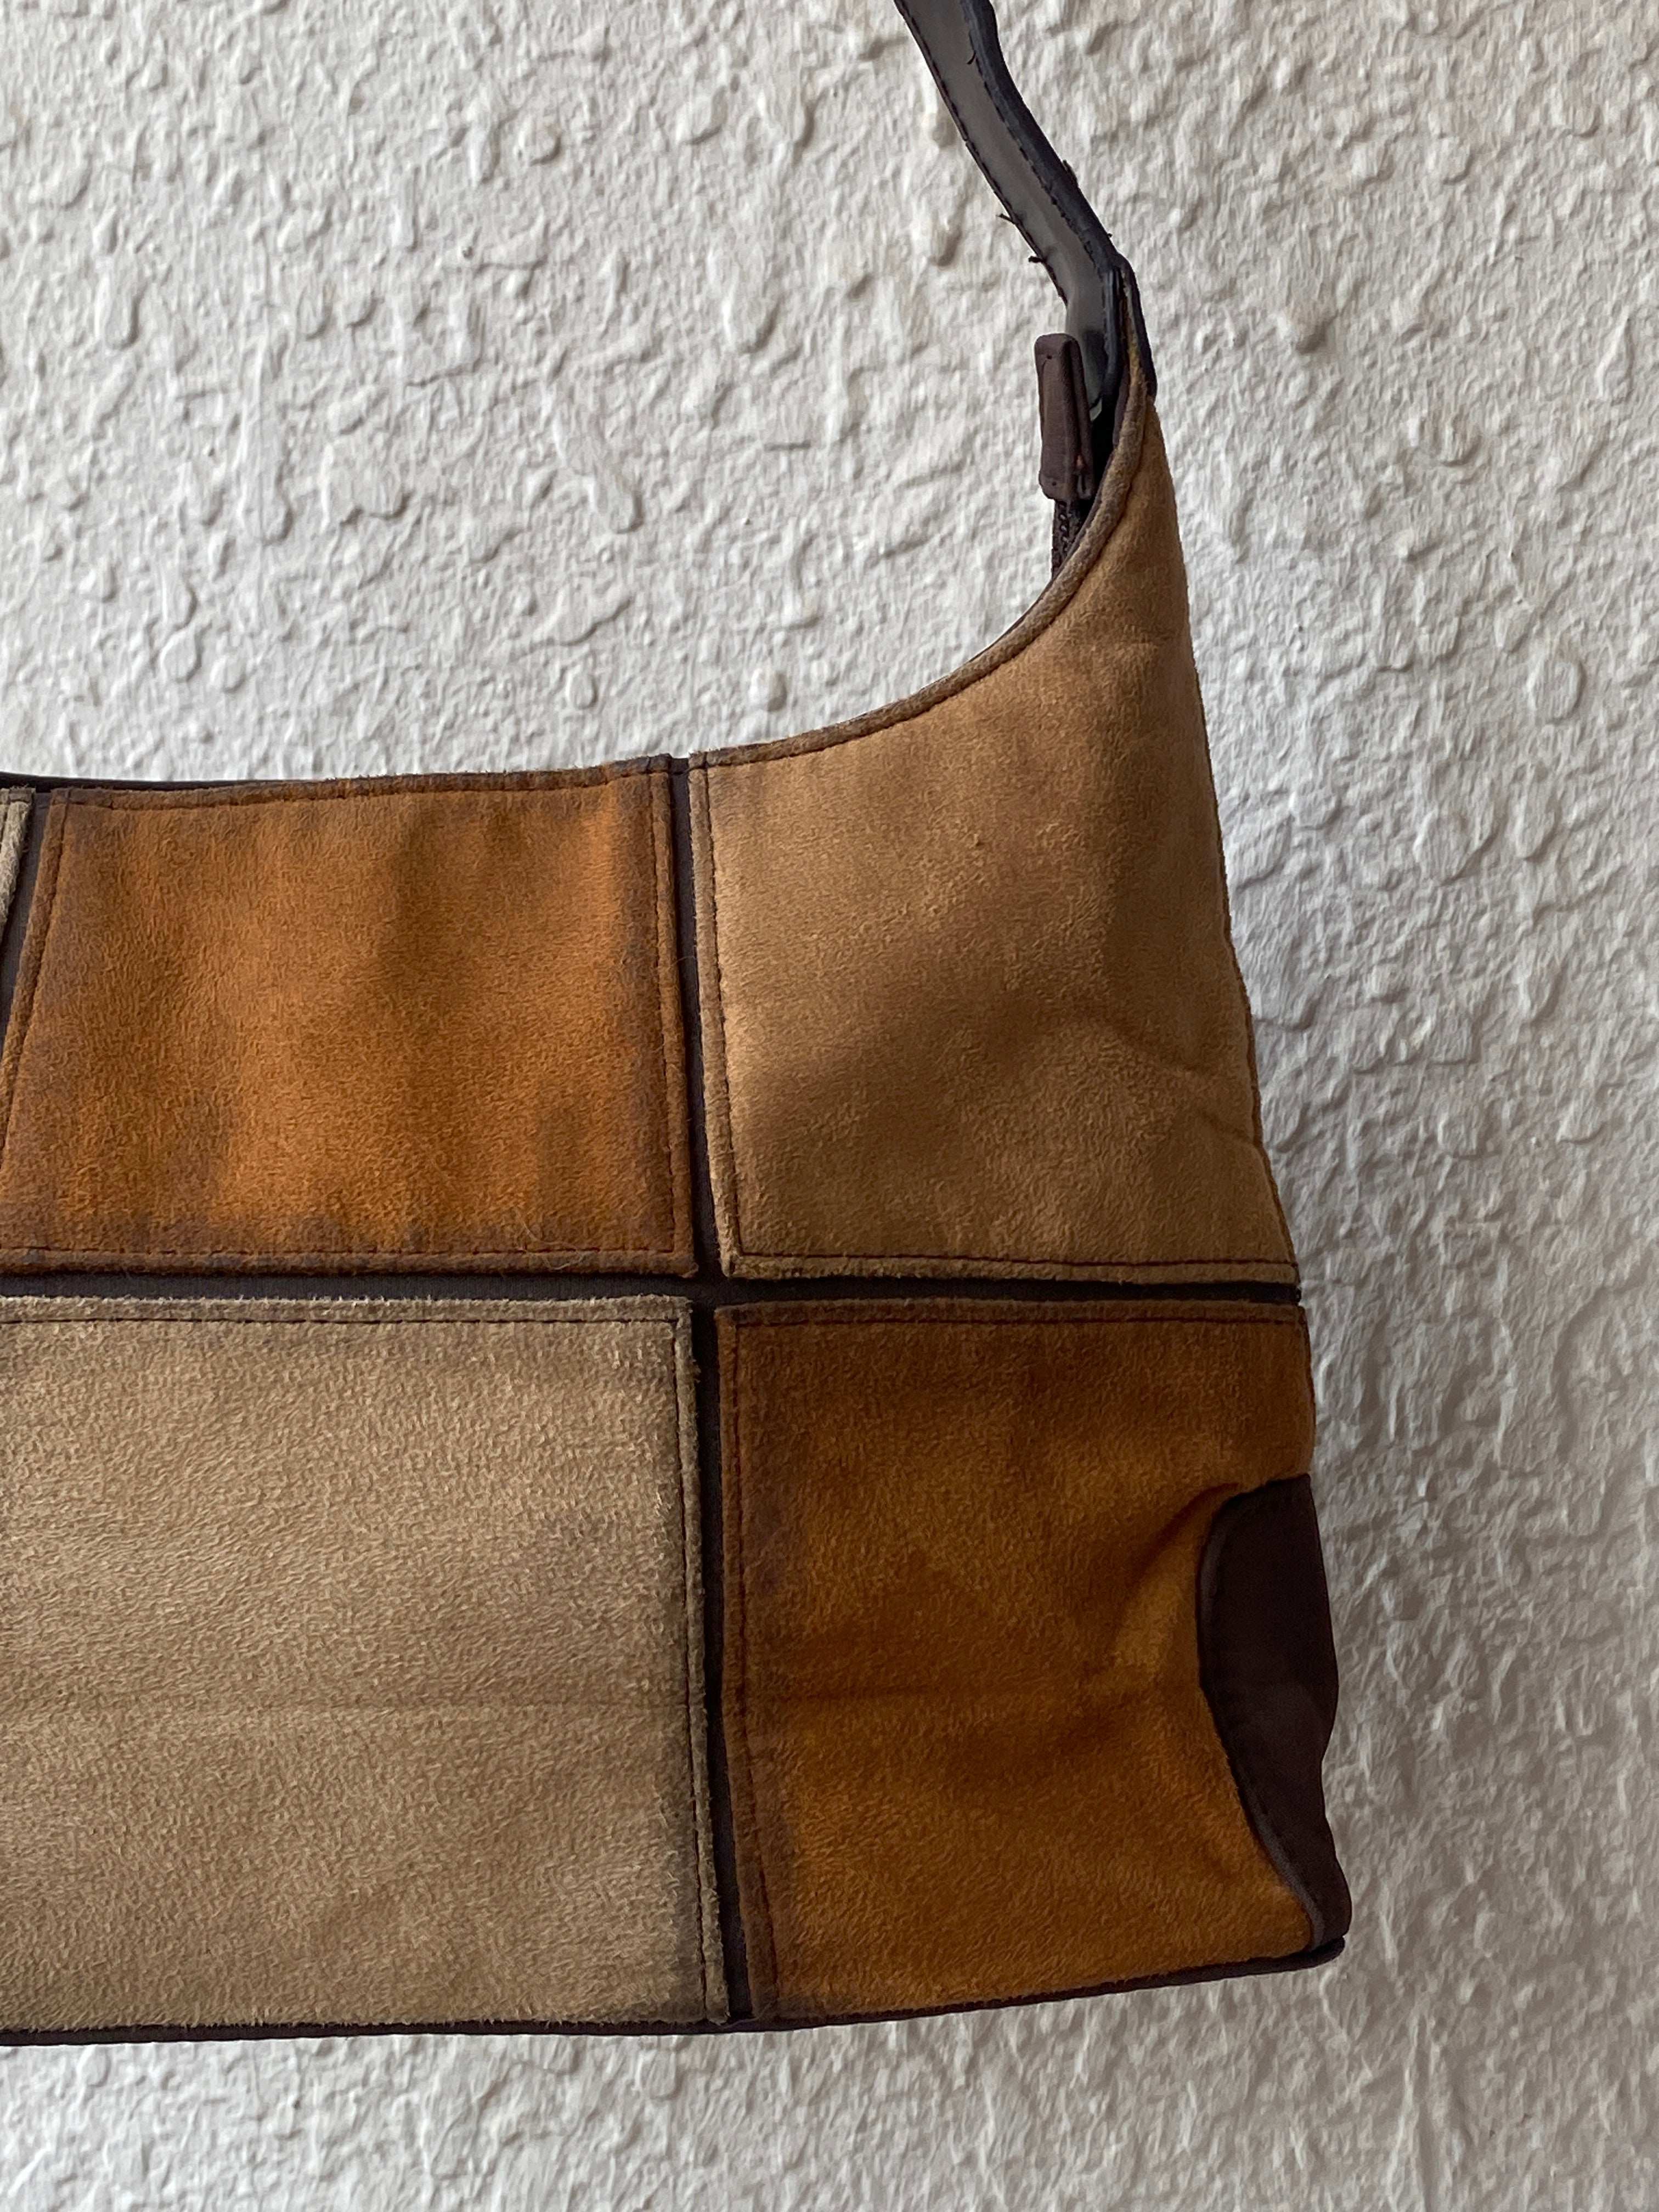 Vintage Patchwork Shoulder Bag - Balagan Vintage Bags 90s, bag, NEW IN